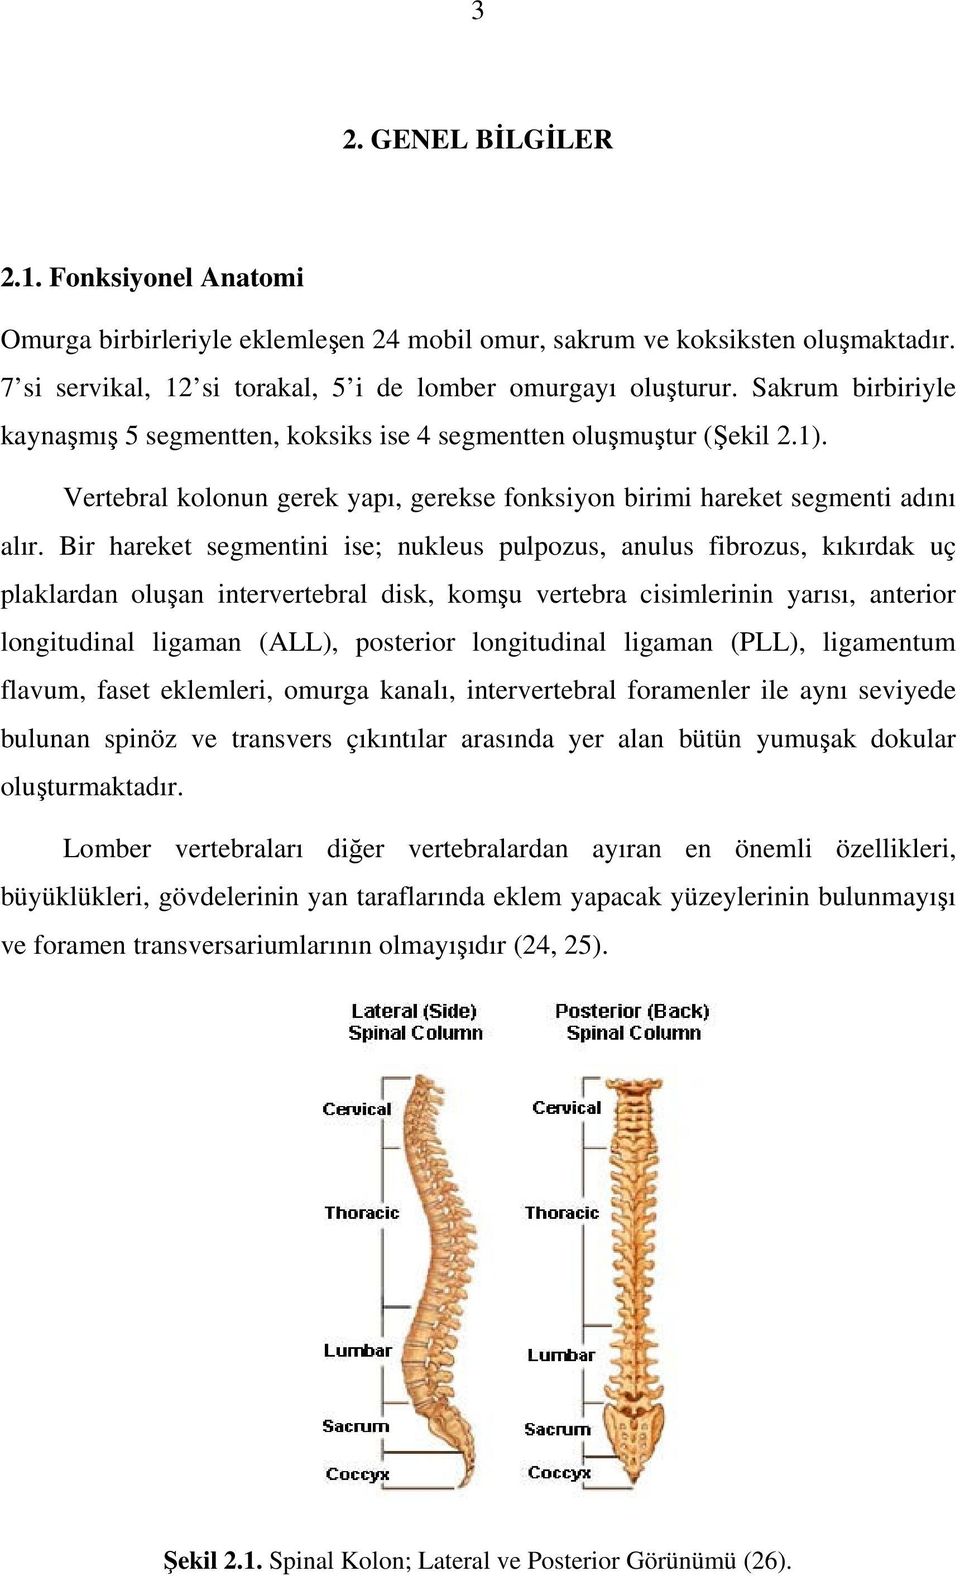 Bir hareket segmentini ise; nukleus pulpozus, anulus fibrozus, kıkırdak uç plaklardan oluşan intervertebral disk, komşu vertebra cisimlerinin yarısı, anterior longitudinal ligaman (ALL), posterior